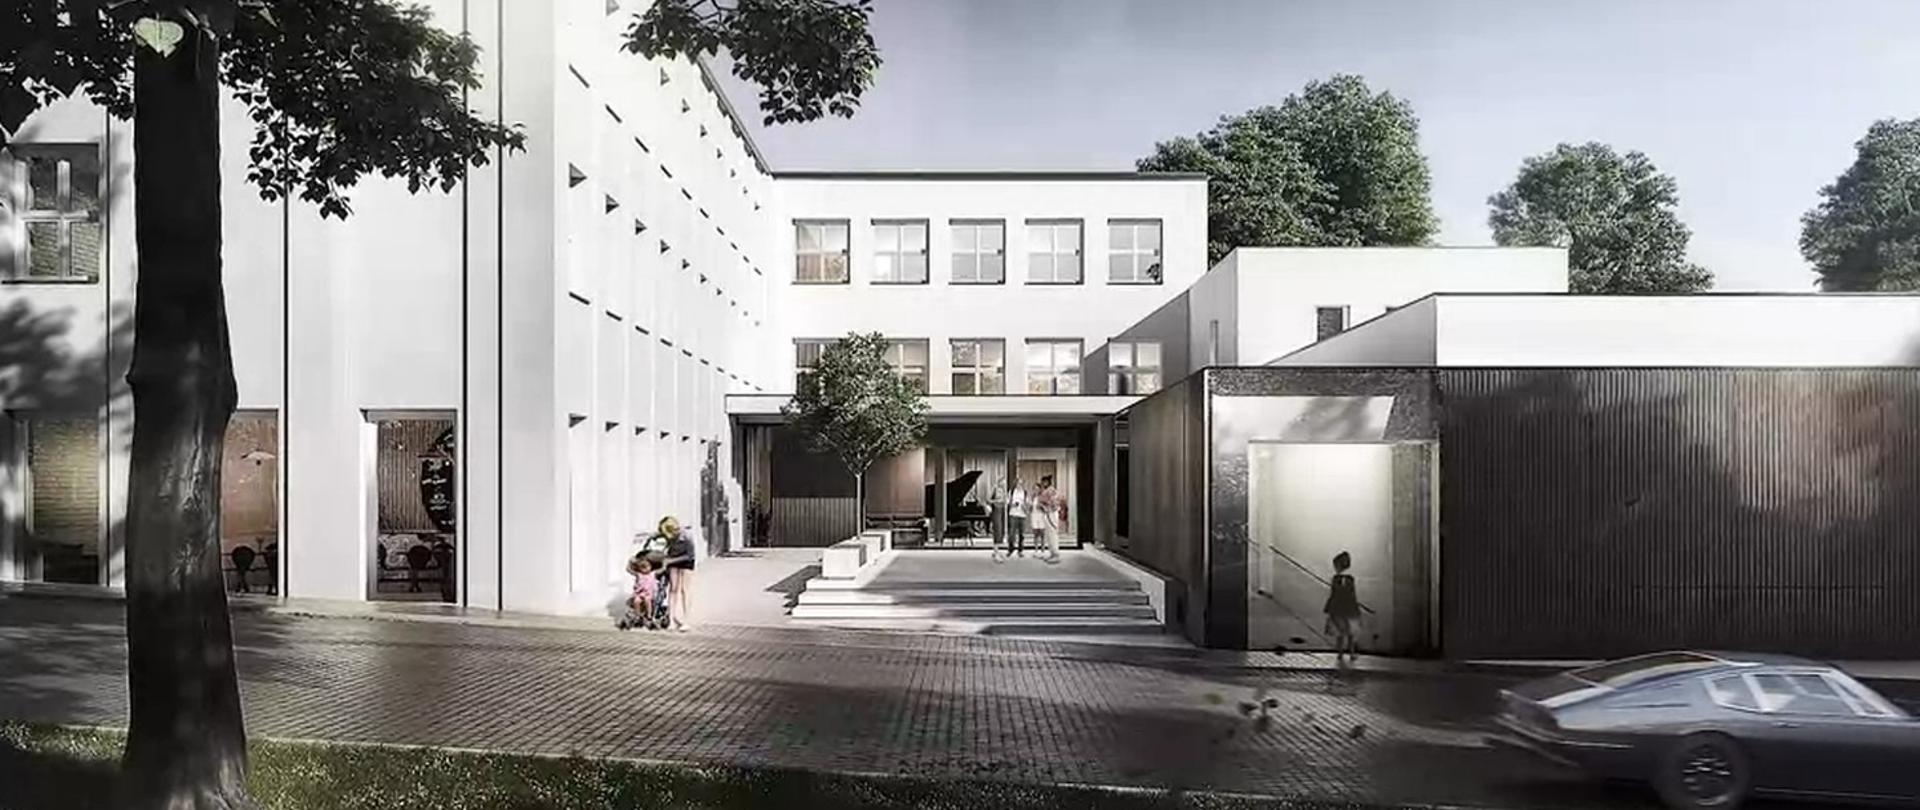 Zdjęcie przedstawia widok dwupiętrowego, białego budynku szkoły znajdującego się za wyłożoną kostką brukową drogą. Z przodu budynku znajduje się przeszkolone wejście, przed którym stoi czworo rozmawiających uczniów.